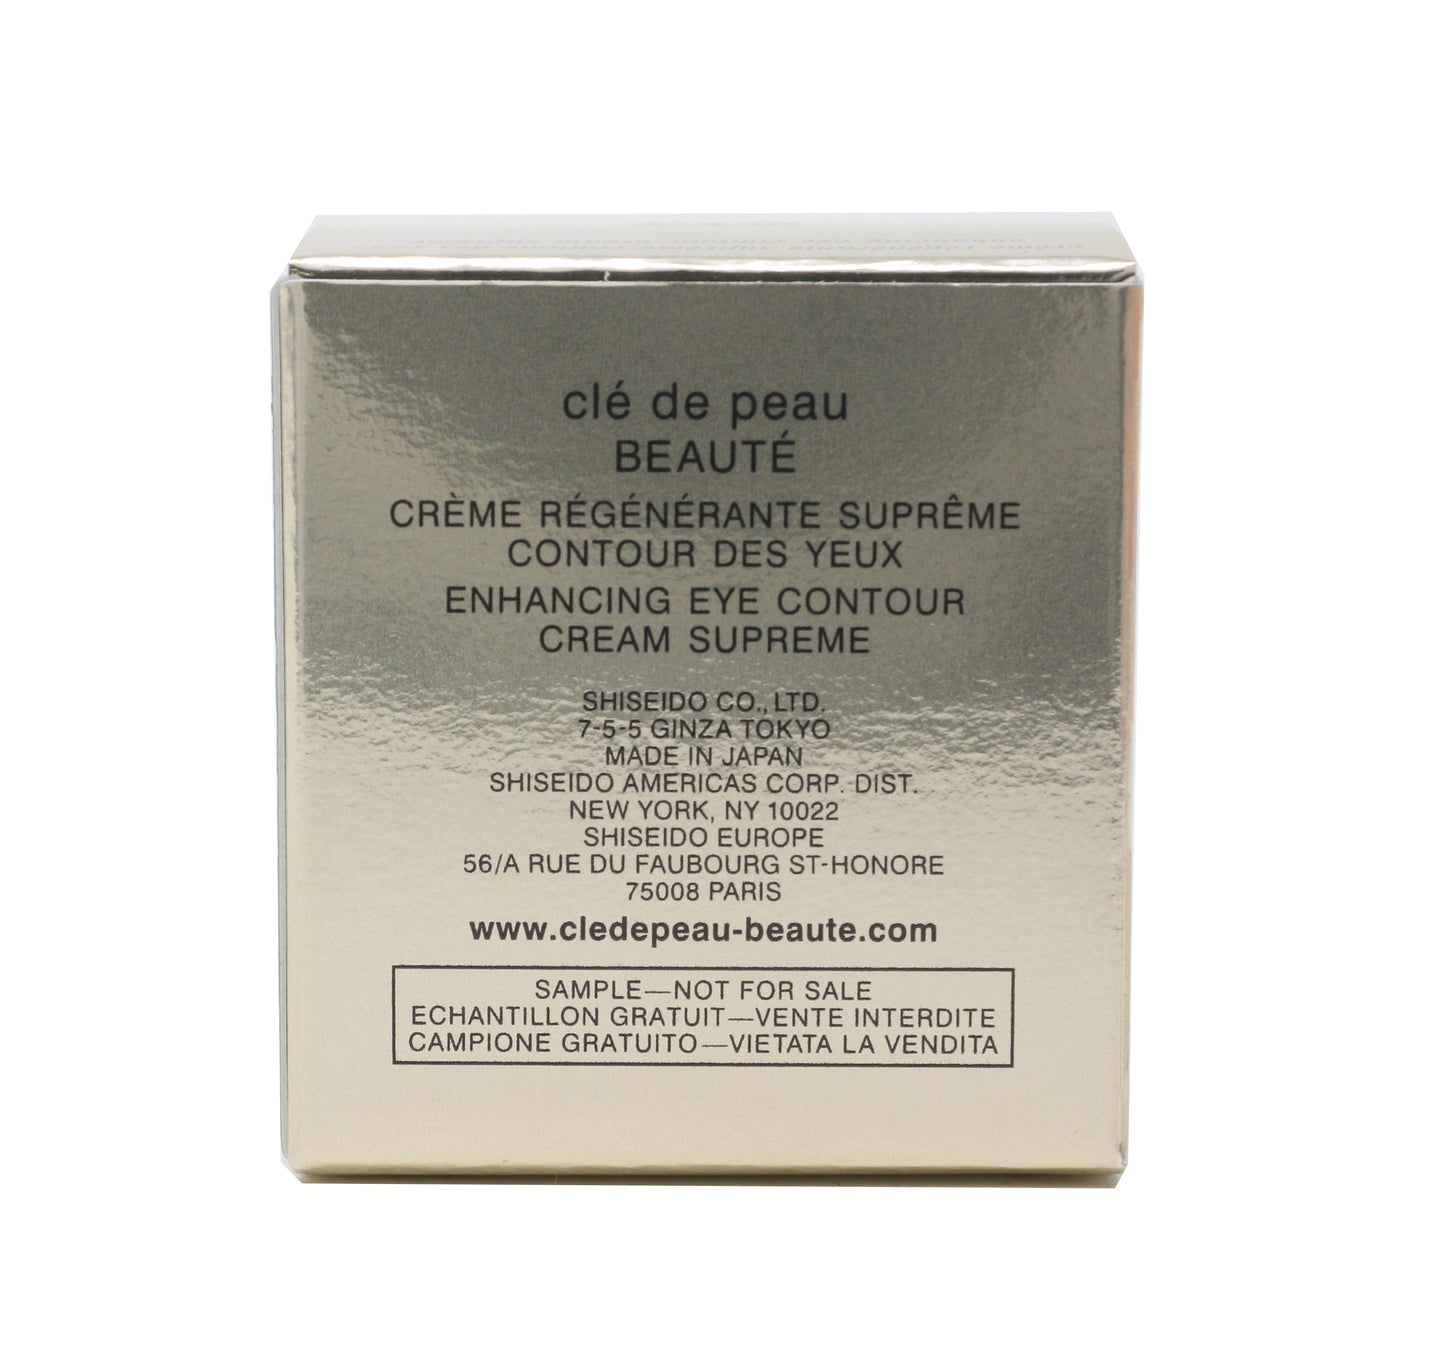 Cle De Peau Beauty Enhancing Eye Contour Cream Supreme 2ml Travel Size New InBox